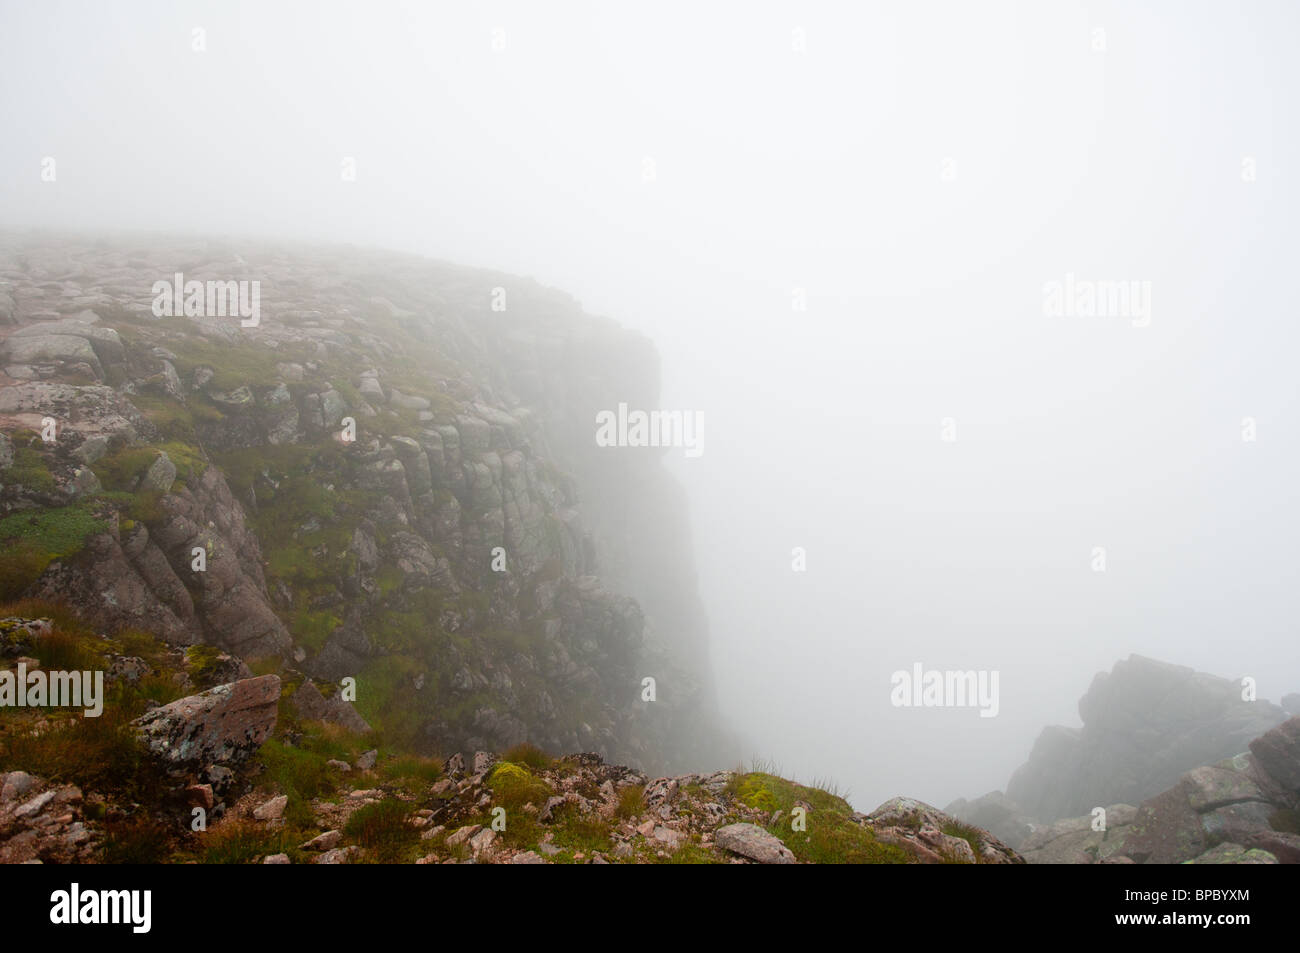 Précipice dans le brouillard, montagnes de Cairngorm, Ecosse Banque D'Images